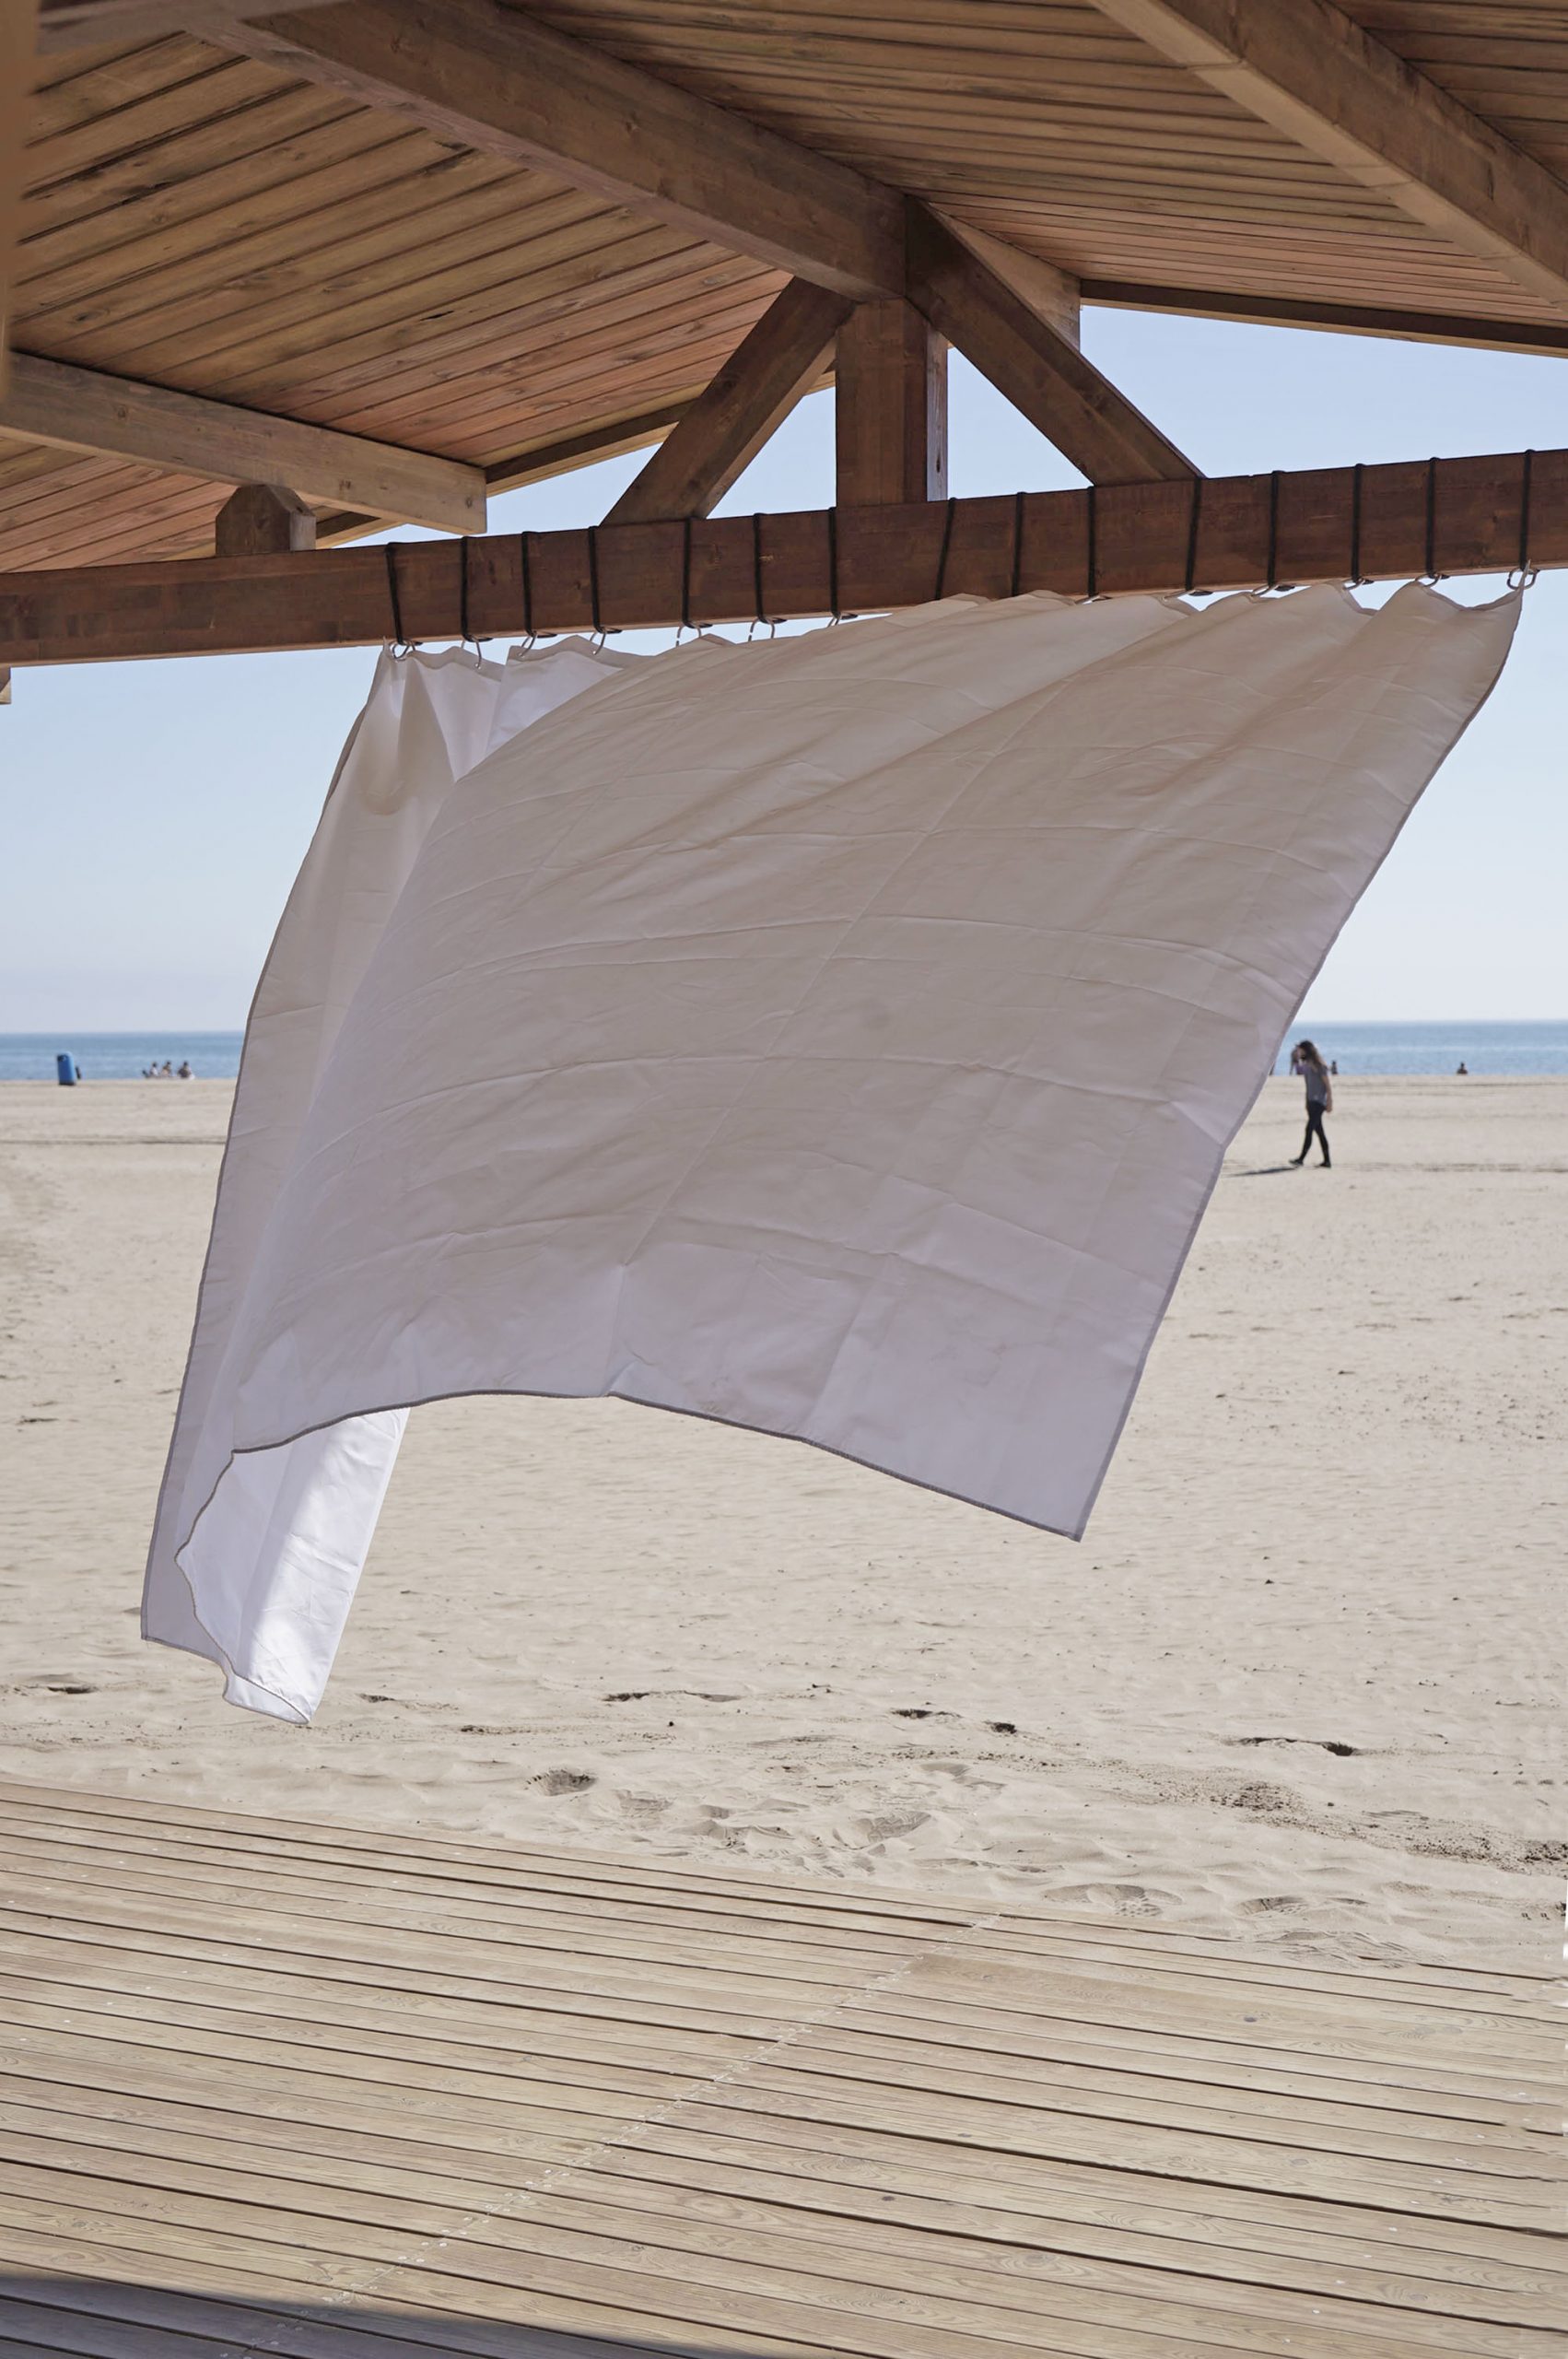 Curtain on the beach